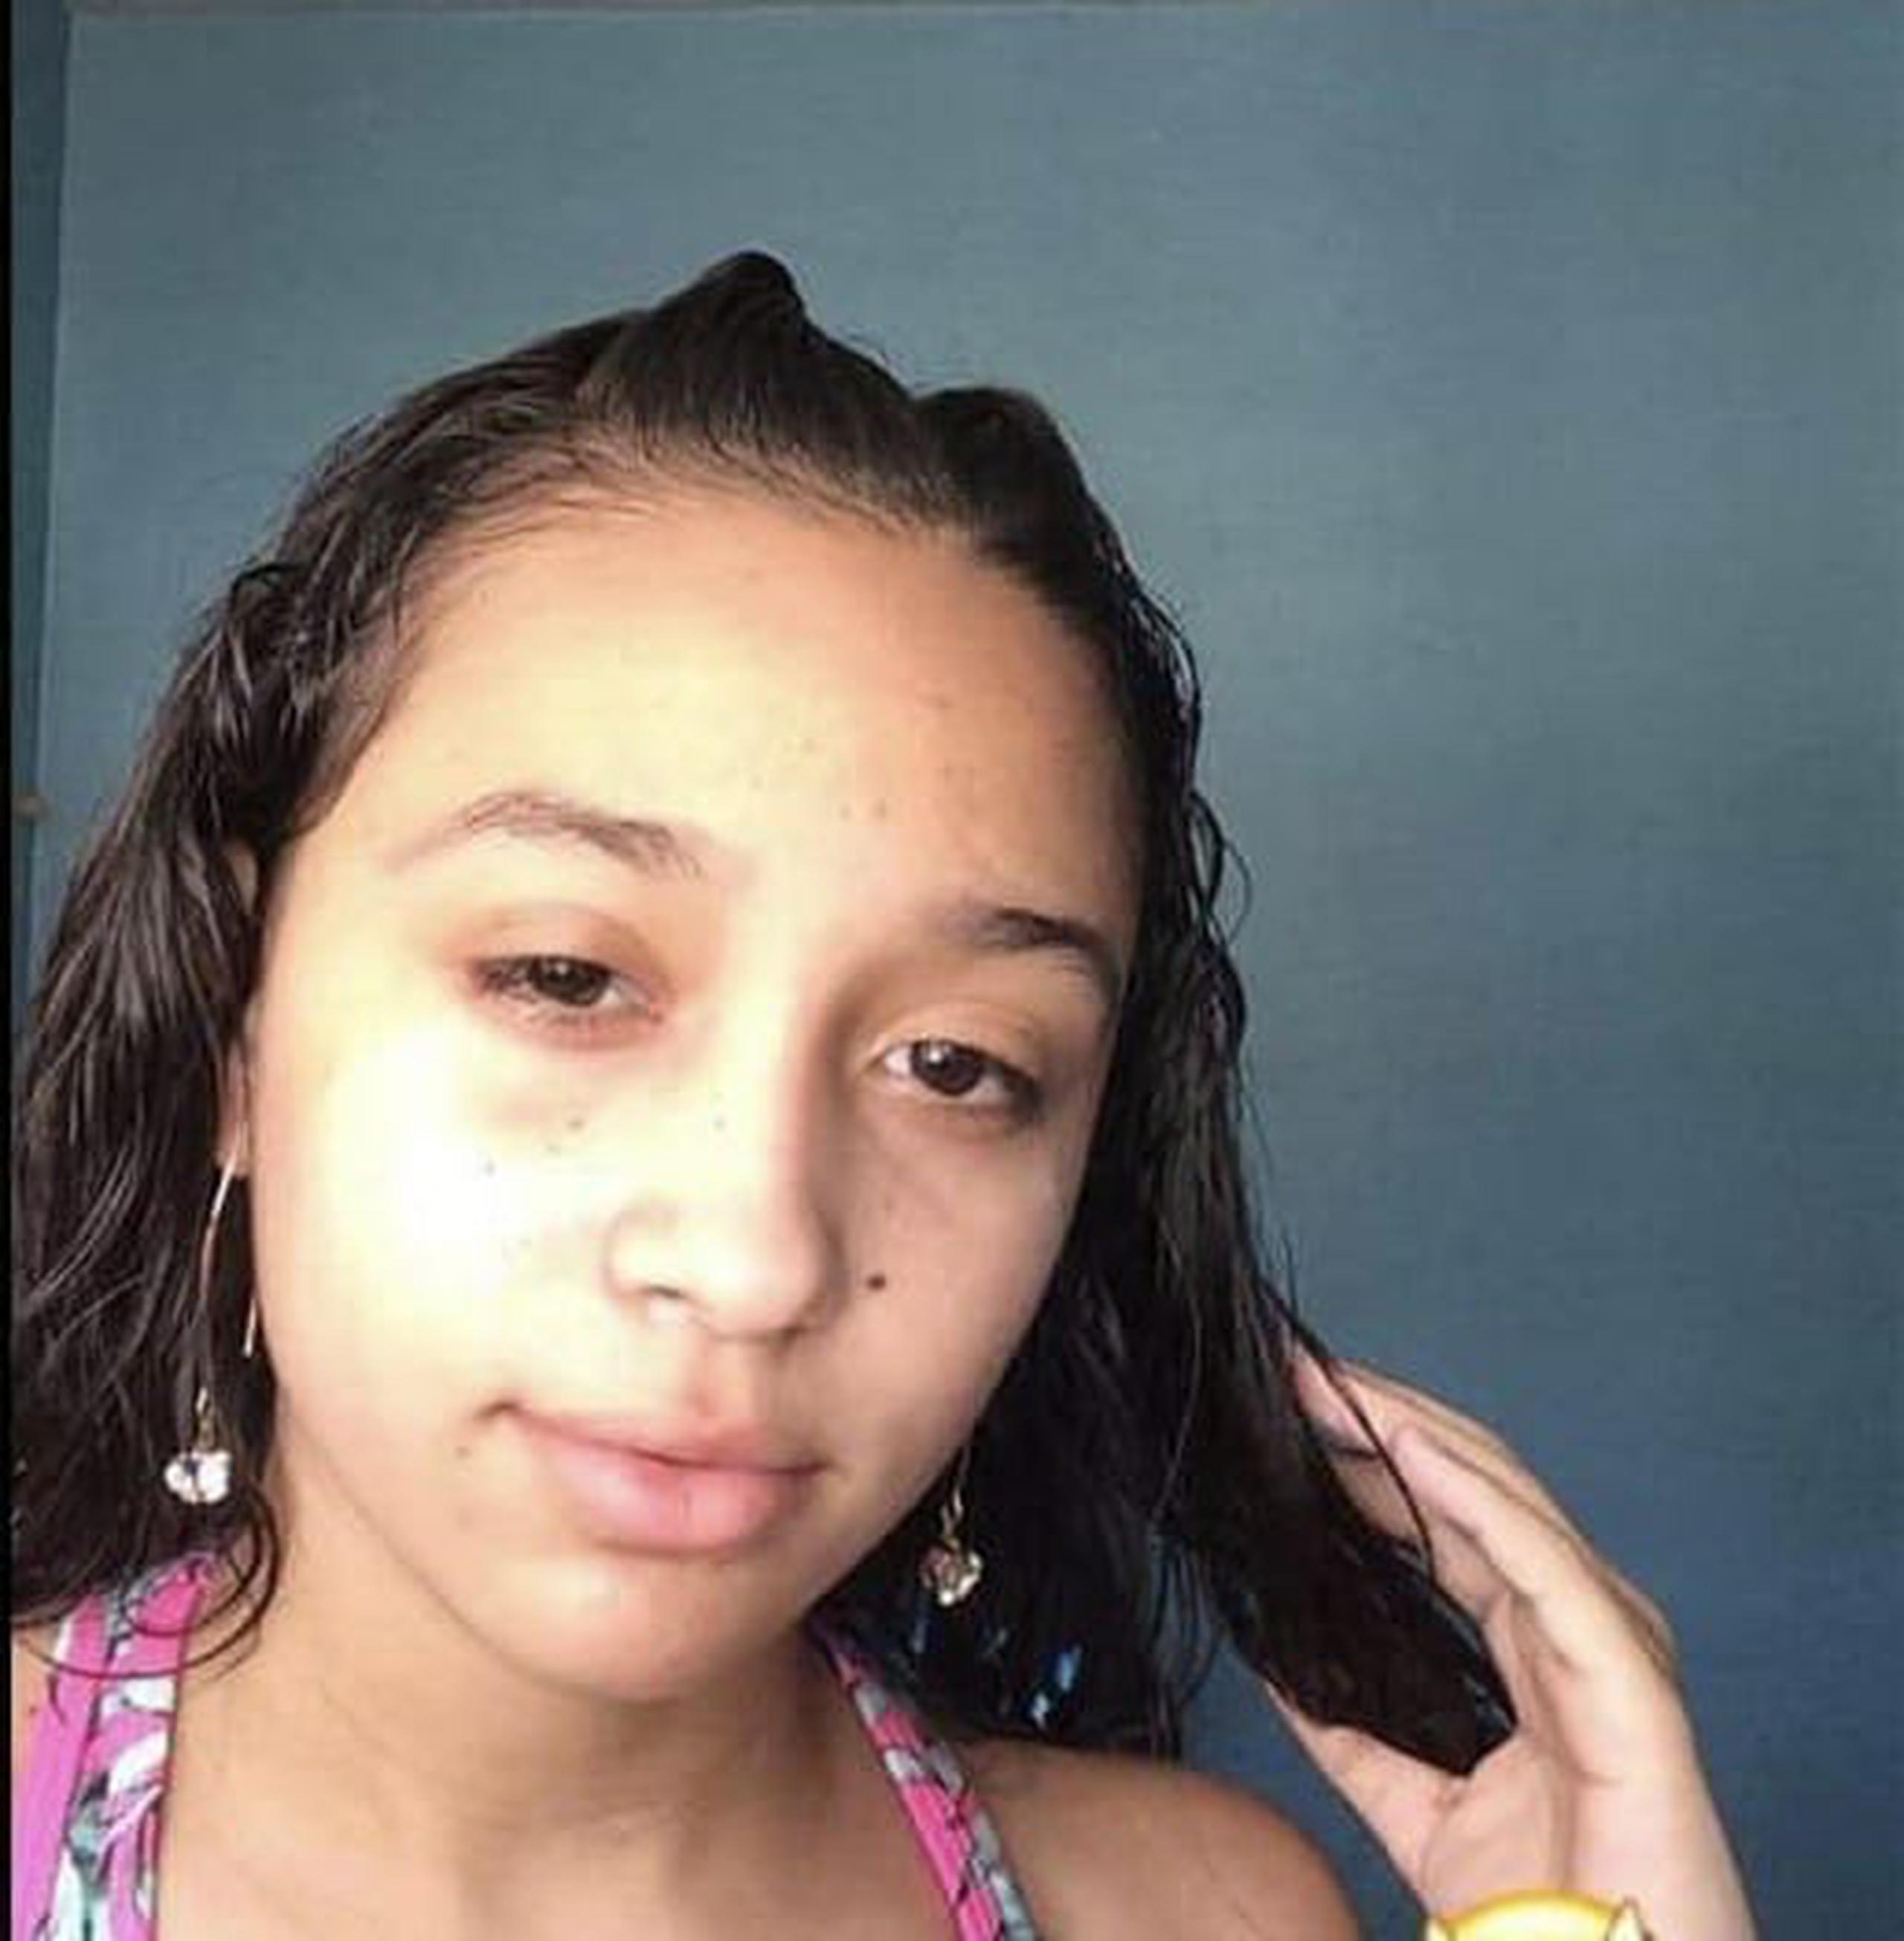 Las autoridades buscan a la adolescente Kermarie Robles Albino de 13 años quien se encuentra desaparecida desde el sábado de la semana pasada del residencial Rivera de Bucaná, en Ponce.